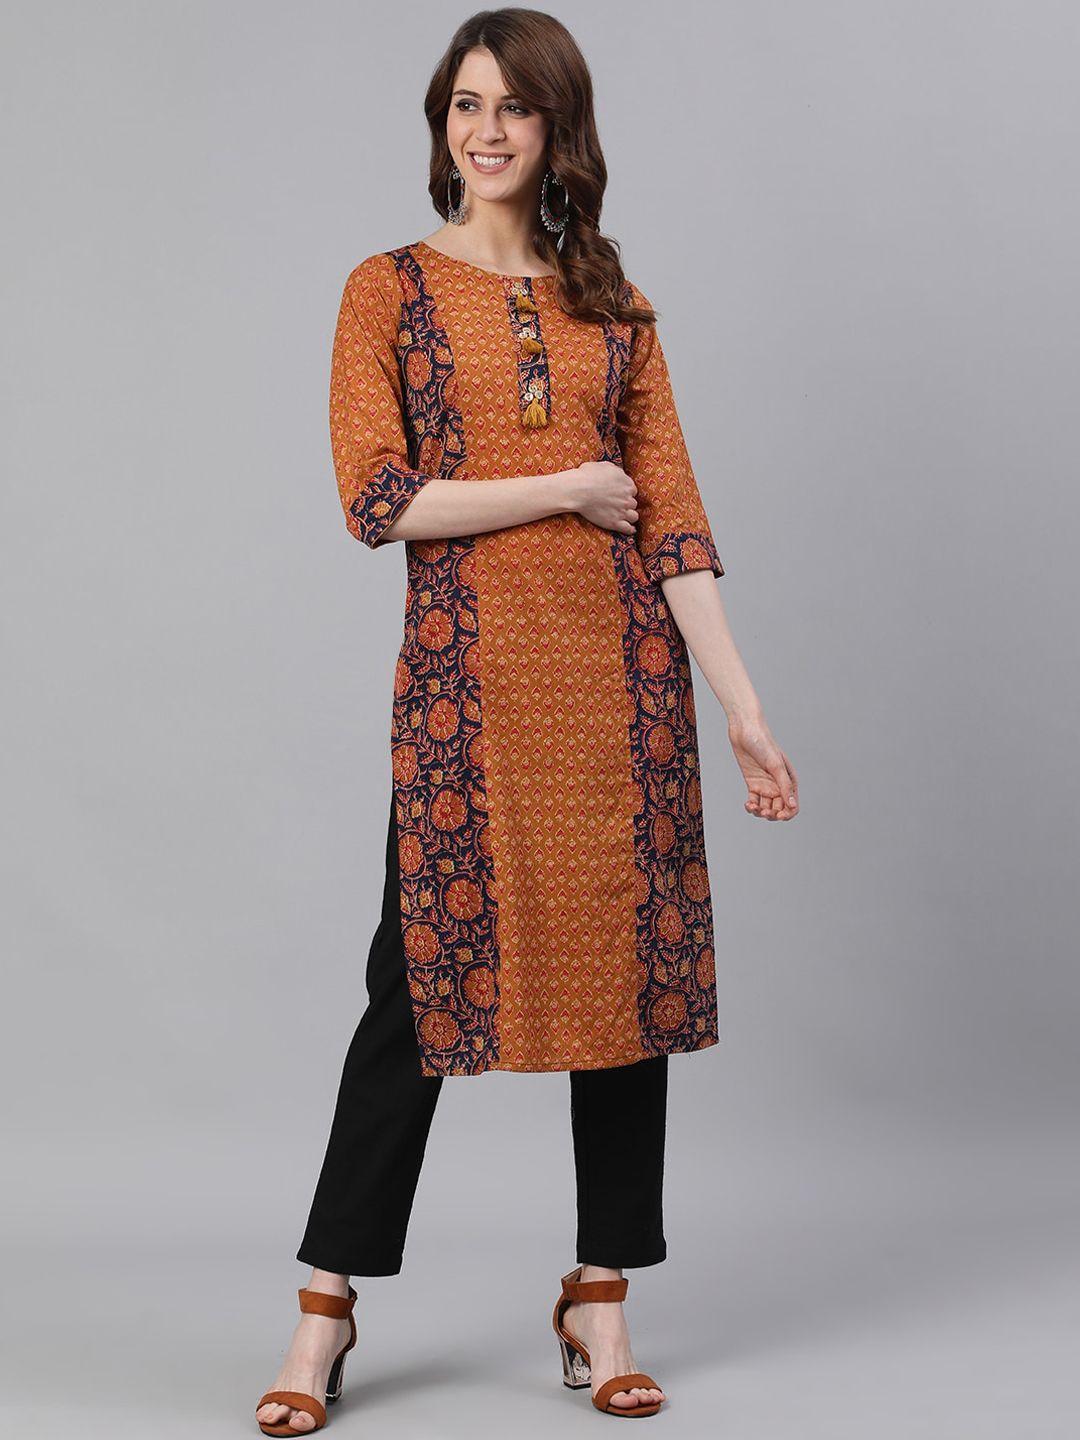 jaipur kurti women mustard brown & black ethnic motifs printed kurta